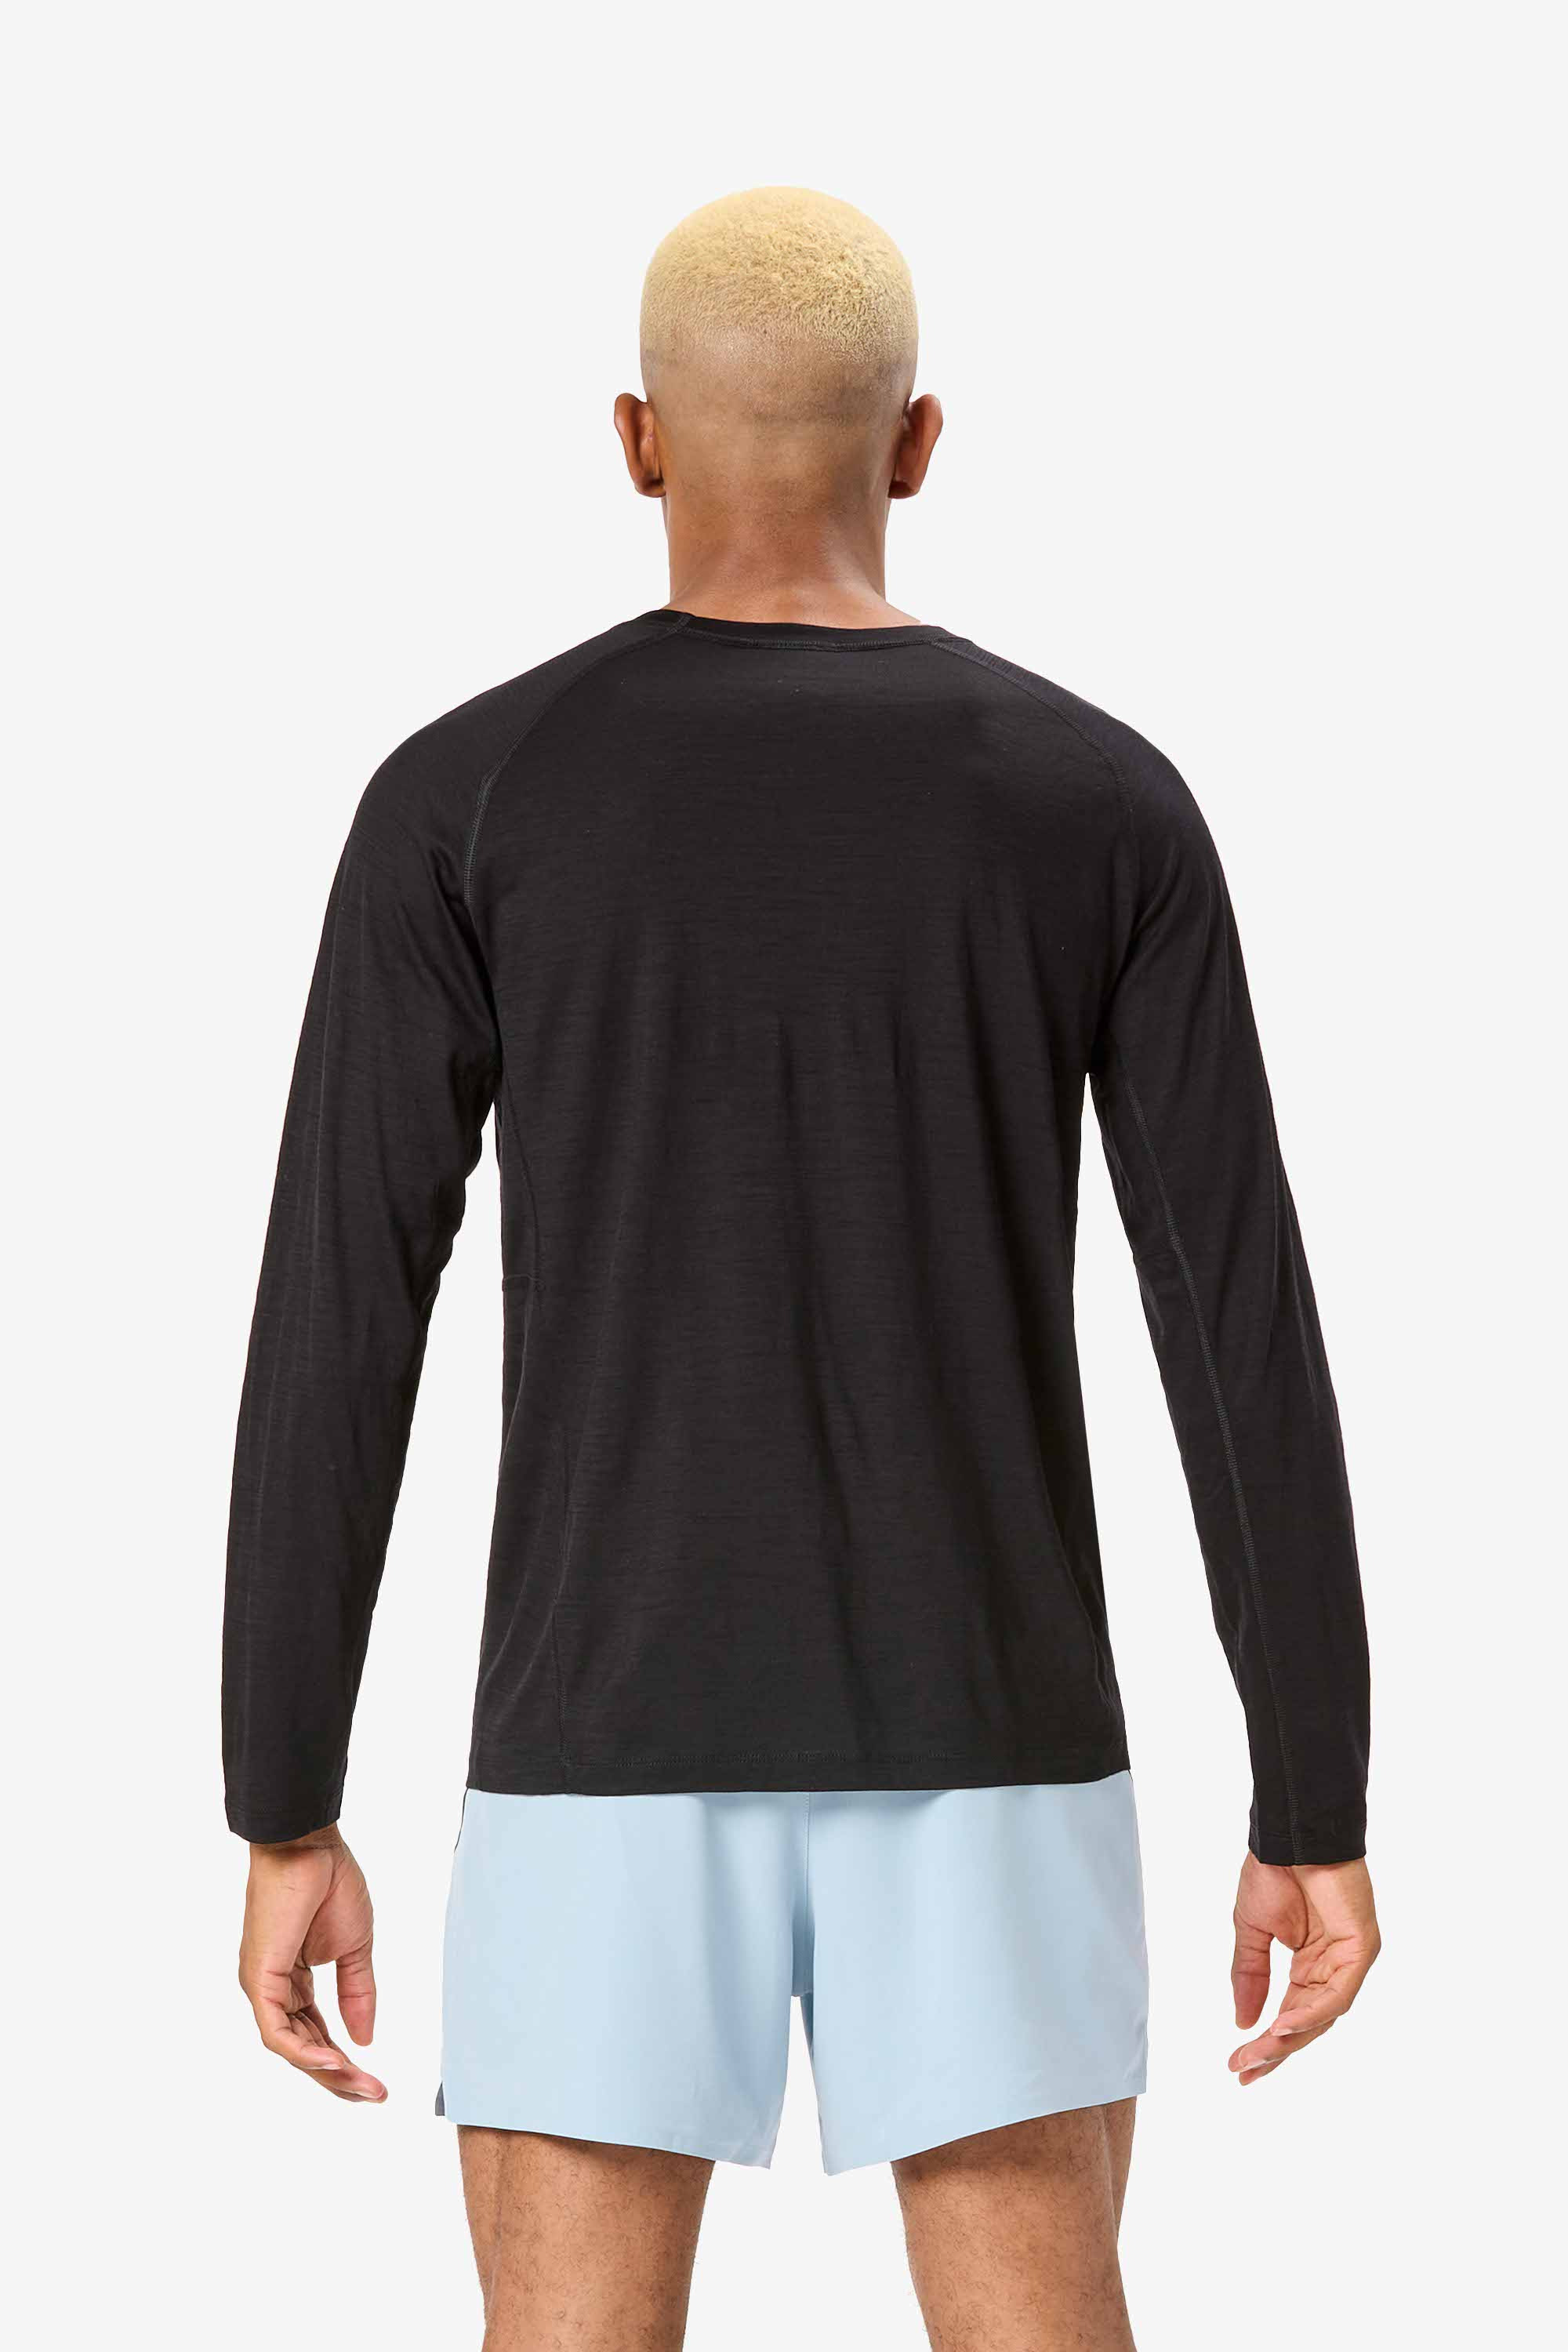 Camisetas de Lana Merino para Hombre ֍ Máxima Comodidad en tu Piel